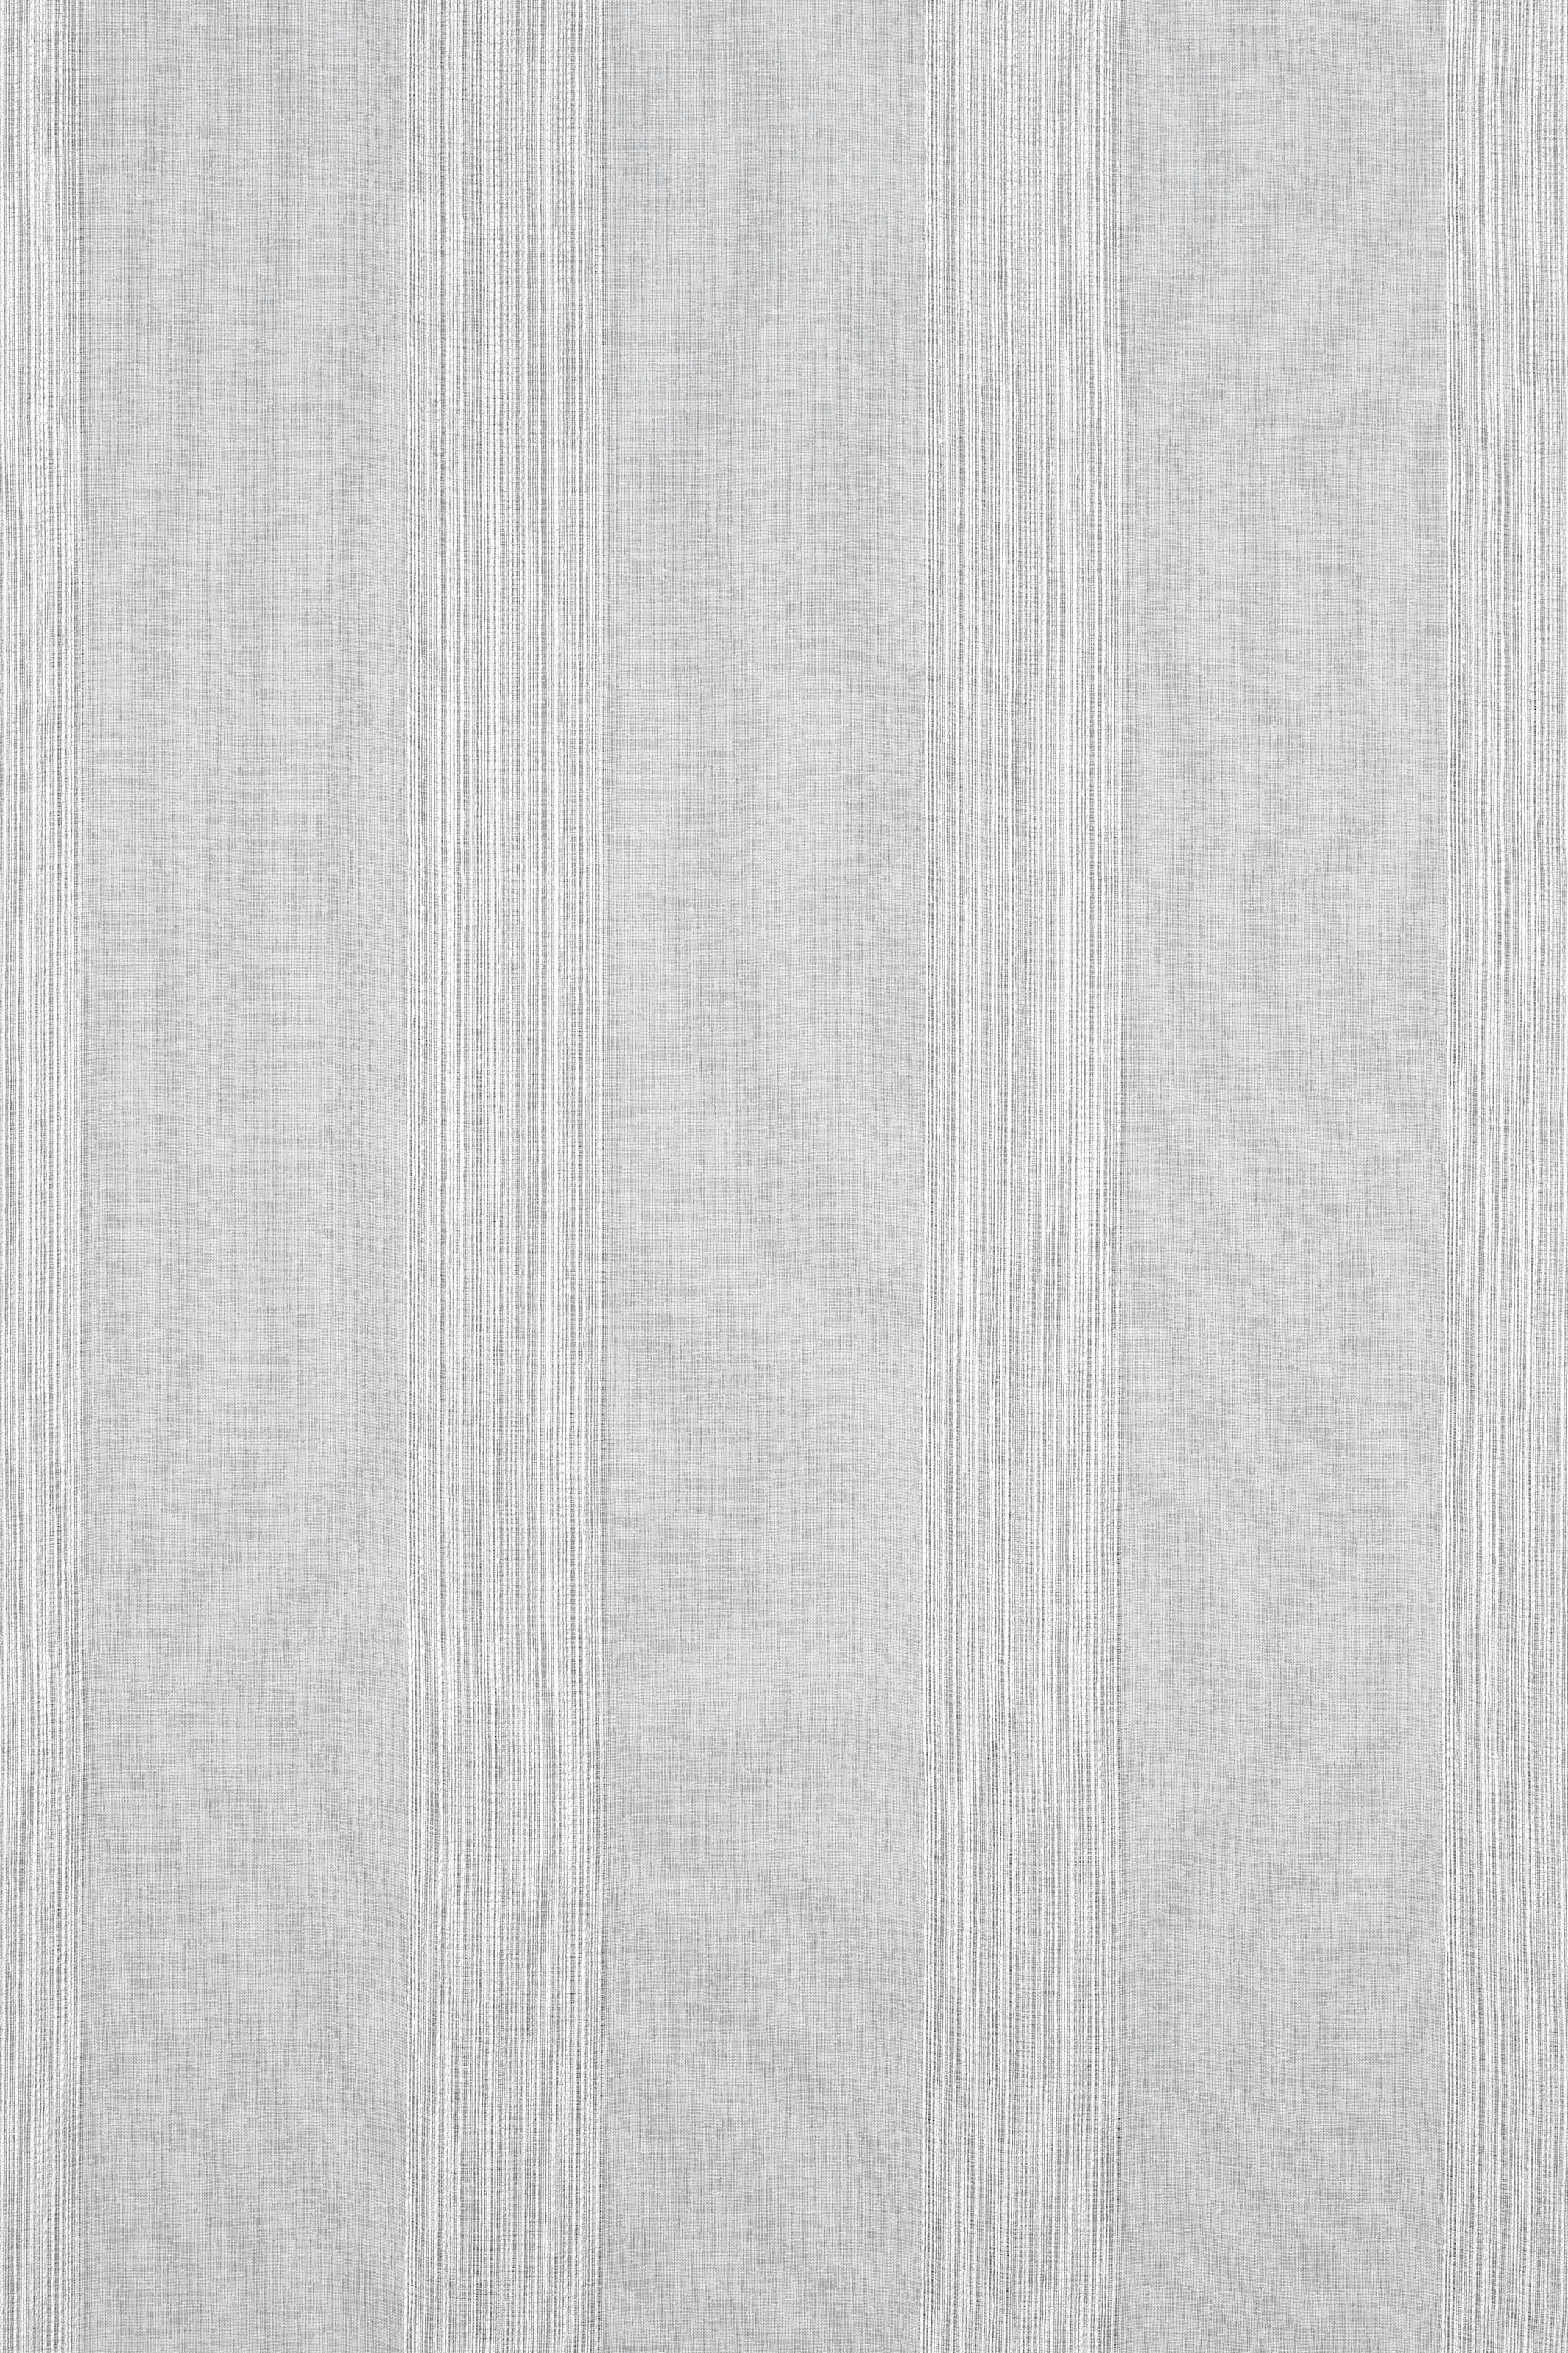 GARDINIA Vorhang »Schal mit verdeckter Schlaufe«, (1 St.), mit Streifen Muster